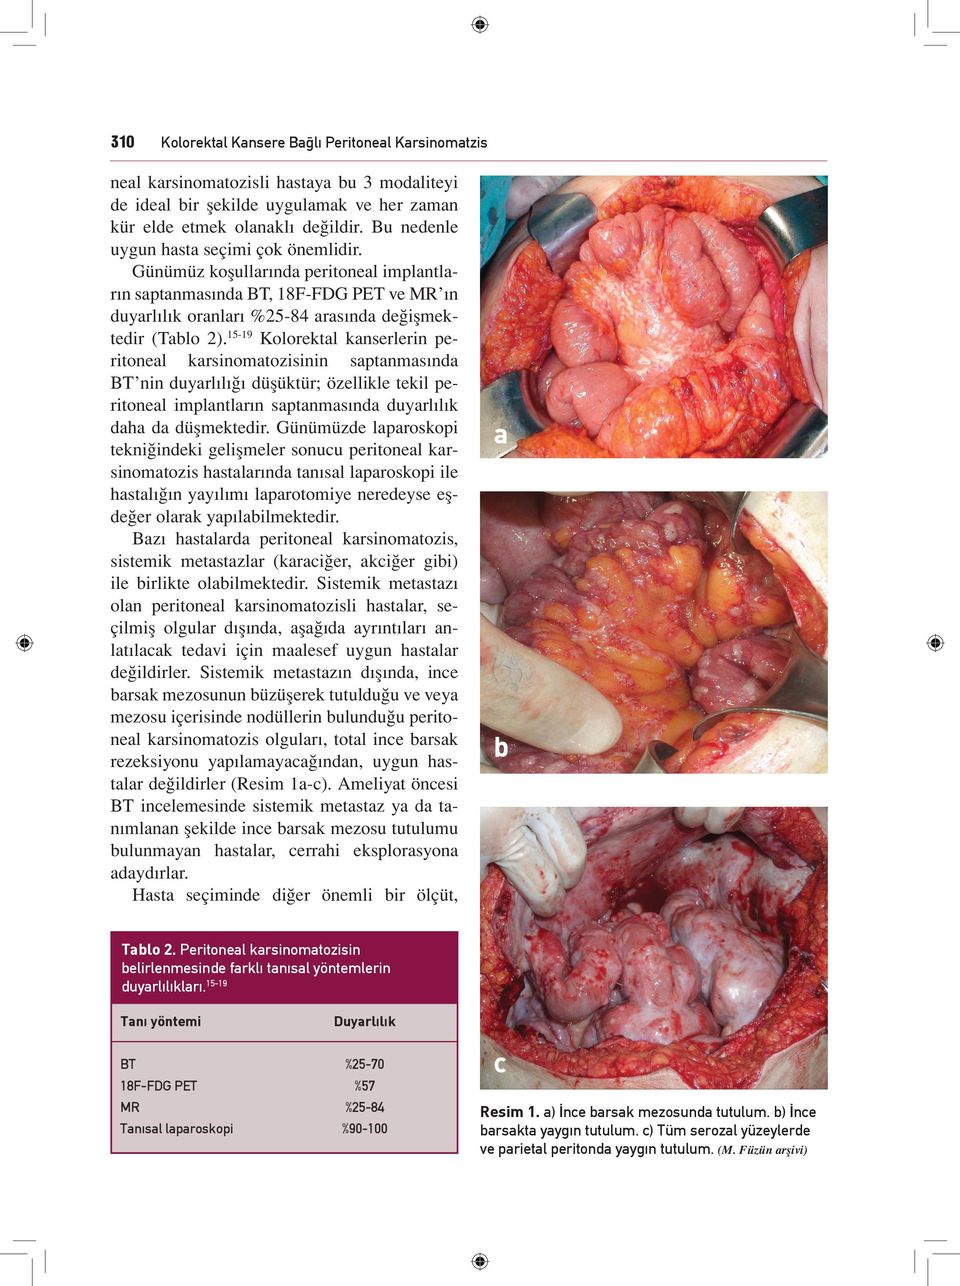 1519 Kolorektal kanserlerin peritoneal karsinomatozisinin saptanmasında BT nin duyarlılığı düşüktür; özellikle tekil peritoneal implantların saptanmasında duyarlılık daha da düşmektedir.